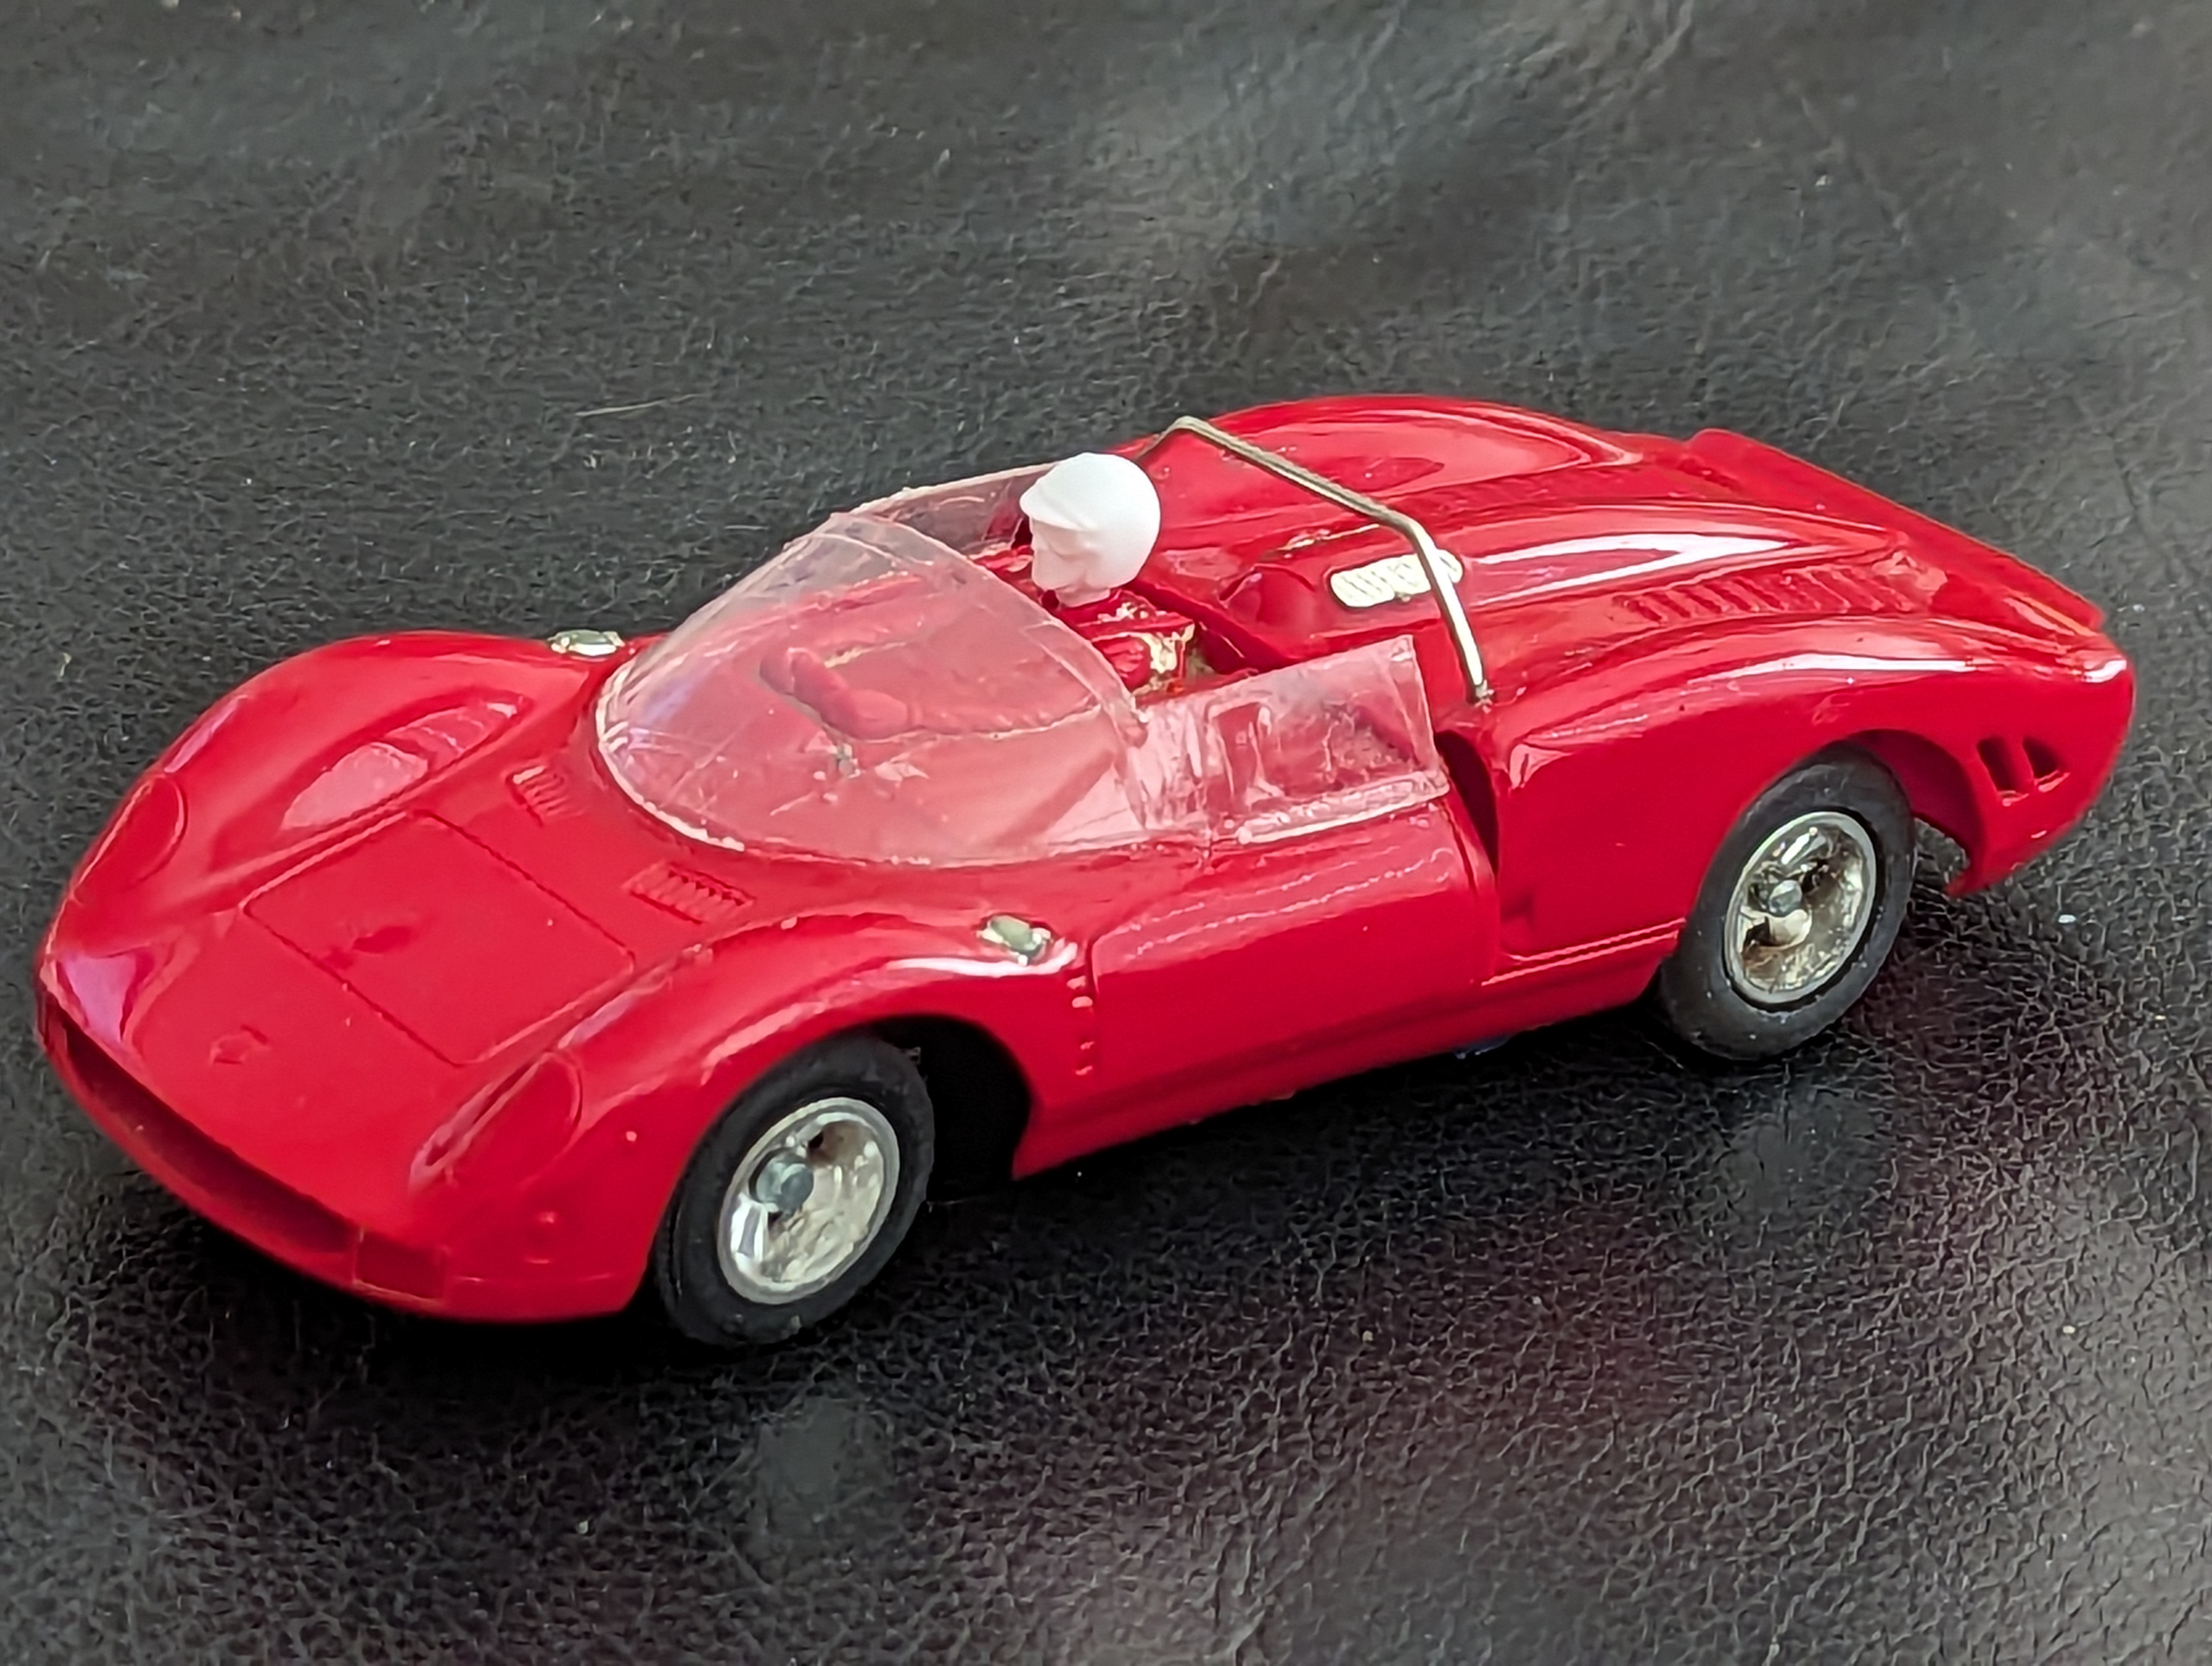 1965 Ferrari 365 P2 - 4th issue (Canadian)